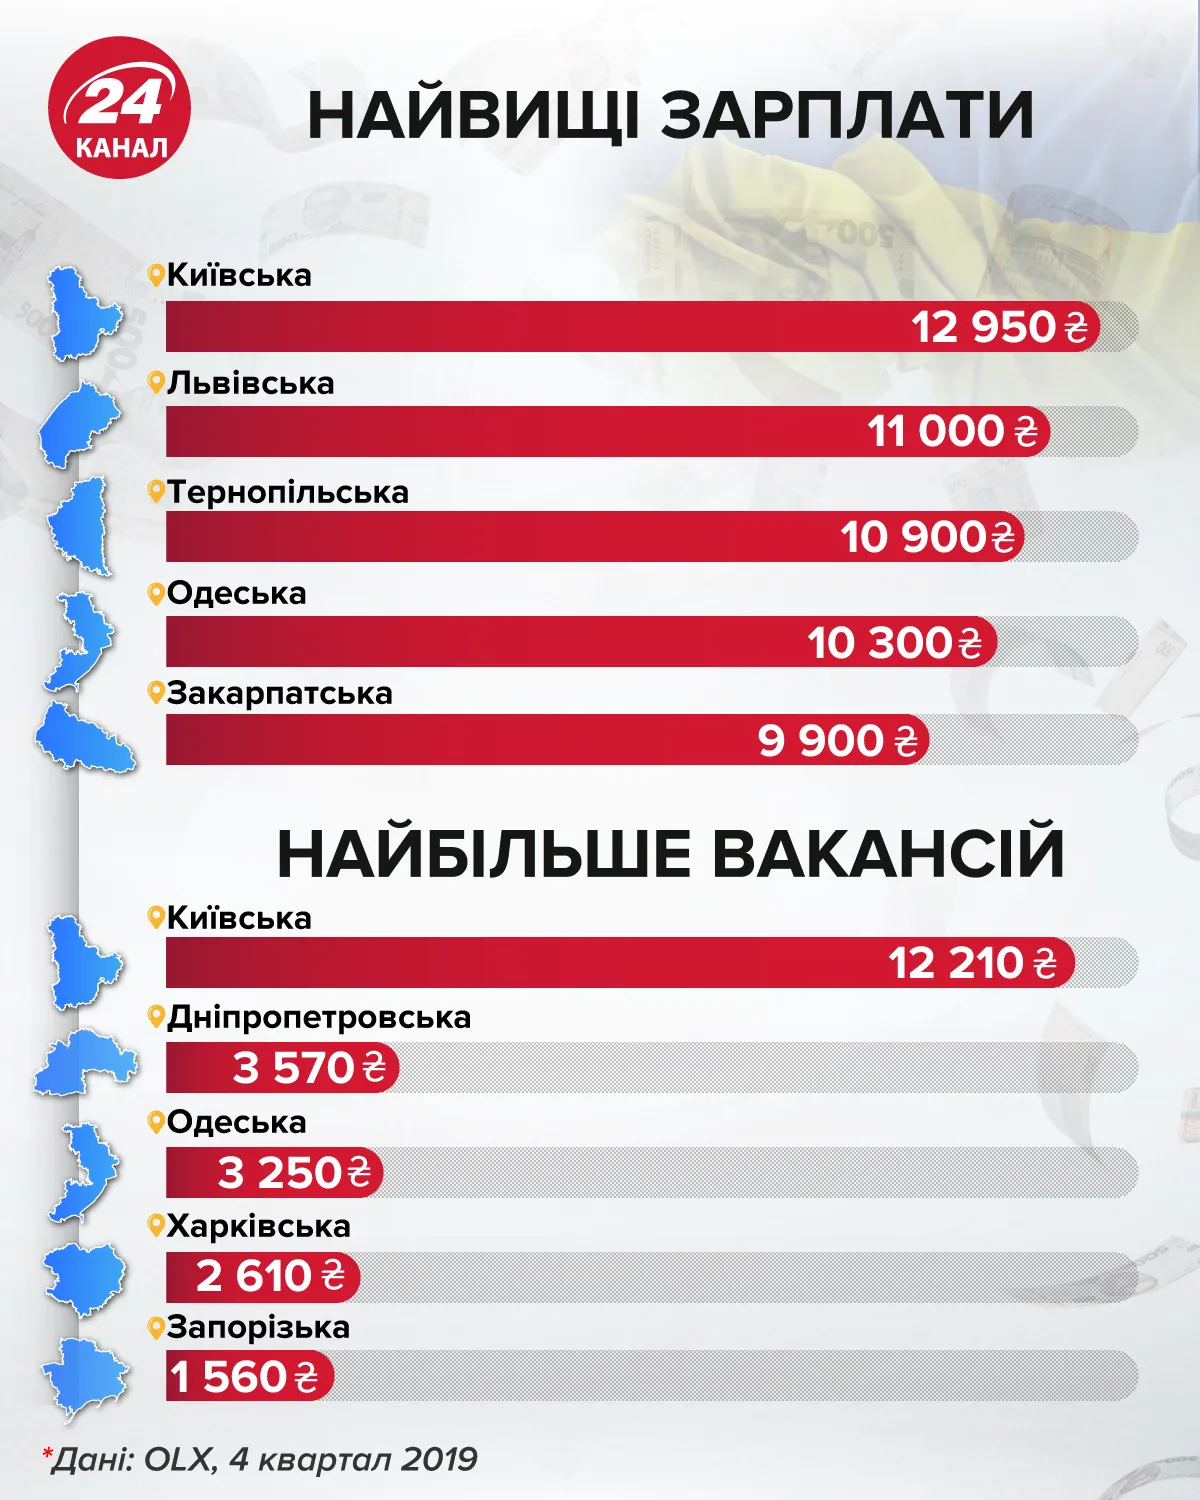 Найвищі зарплати інфографіка 24 каналу